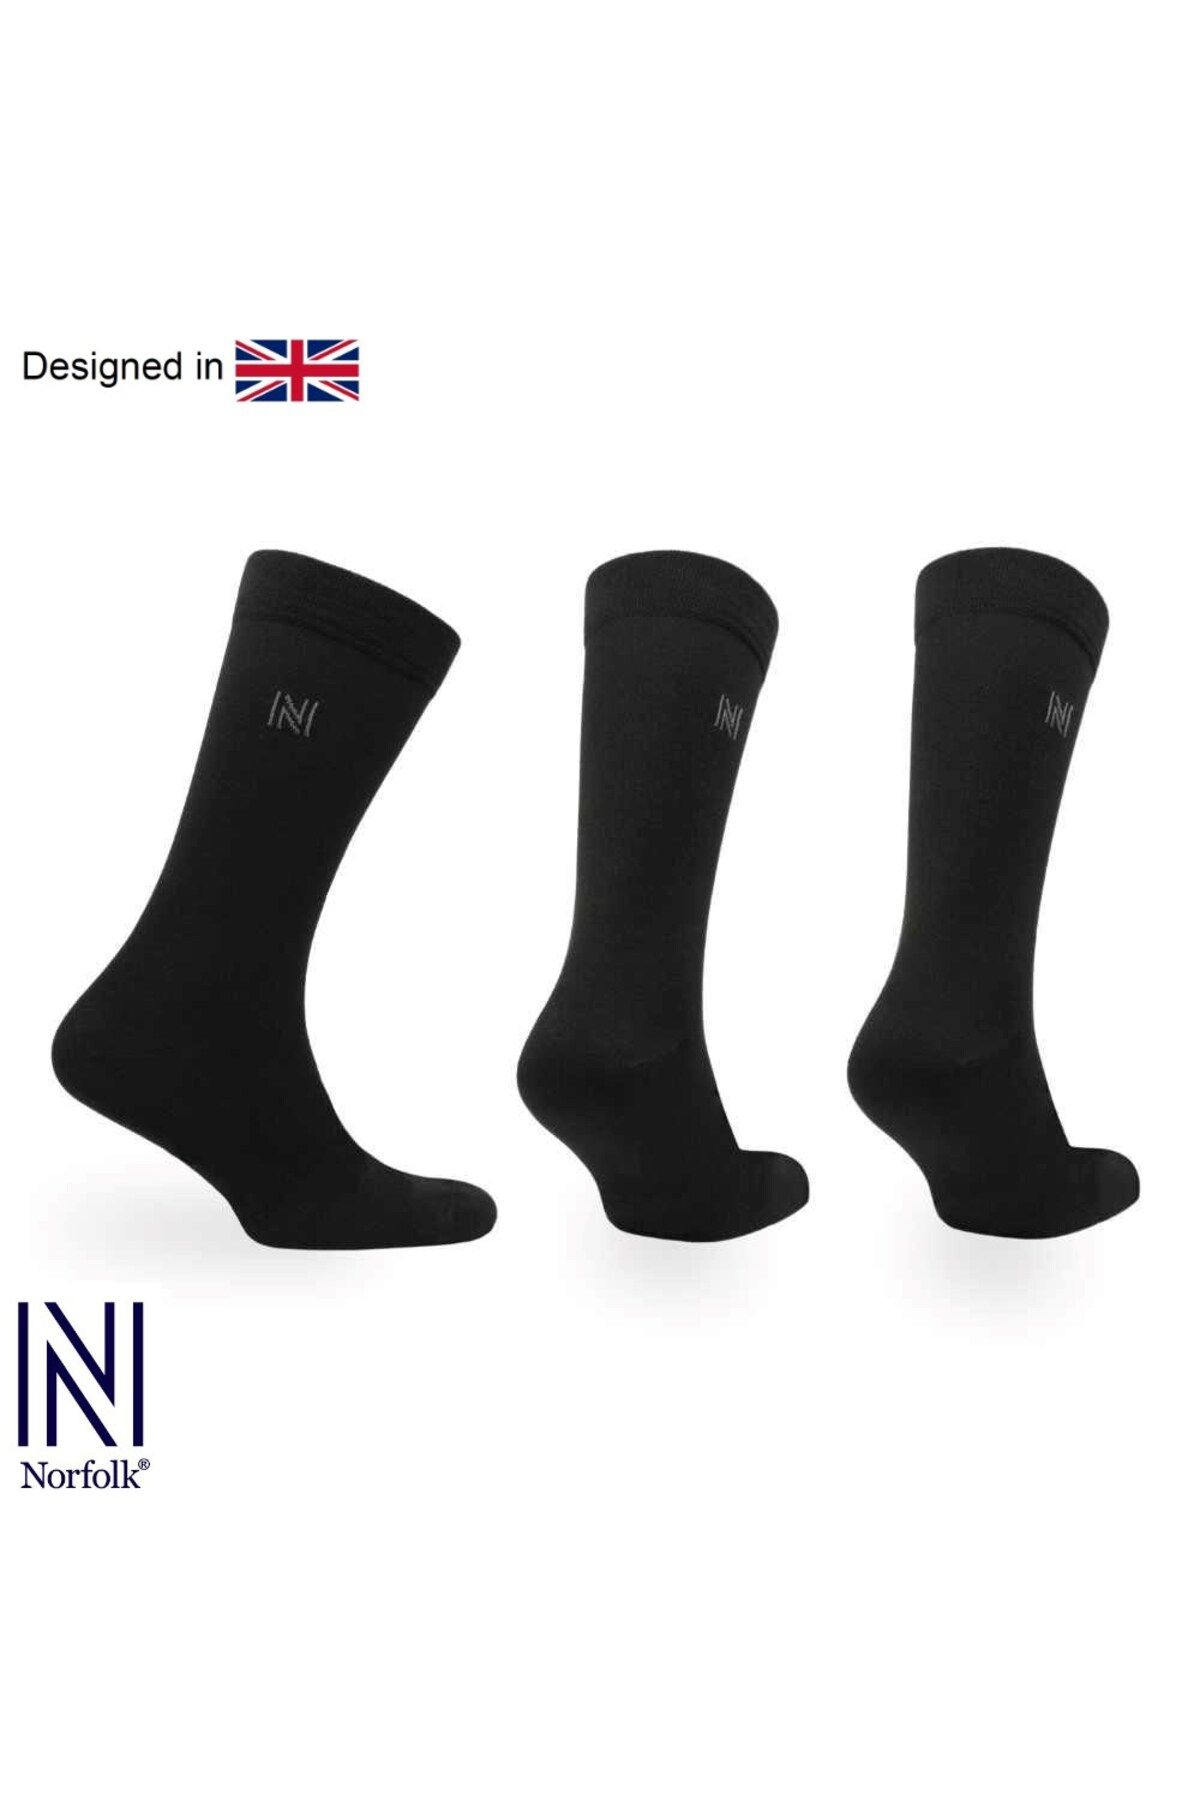 Norfolk BRODY Günlük Konforlu Pamuklu Çorap 3'lü Paket